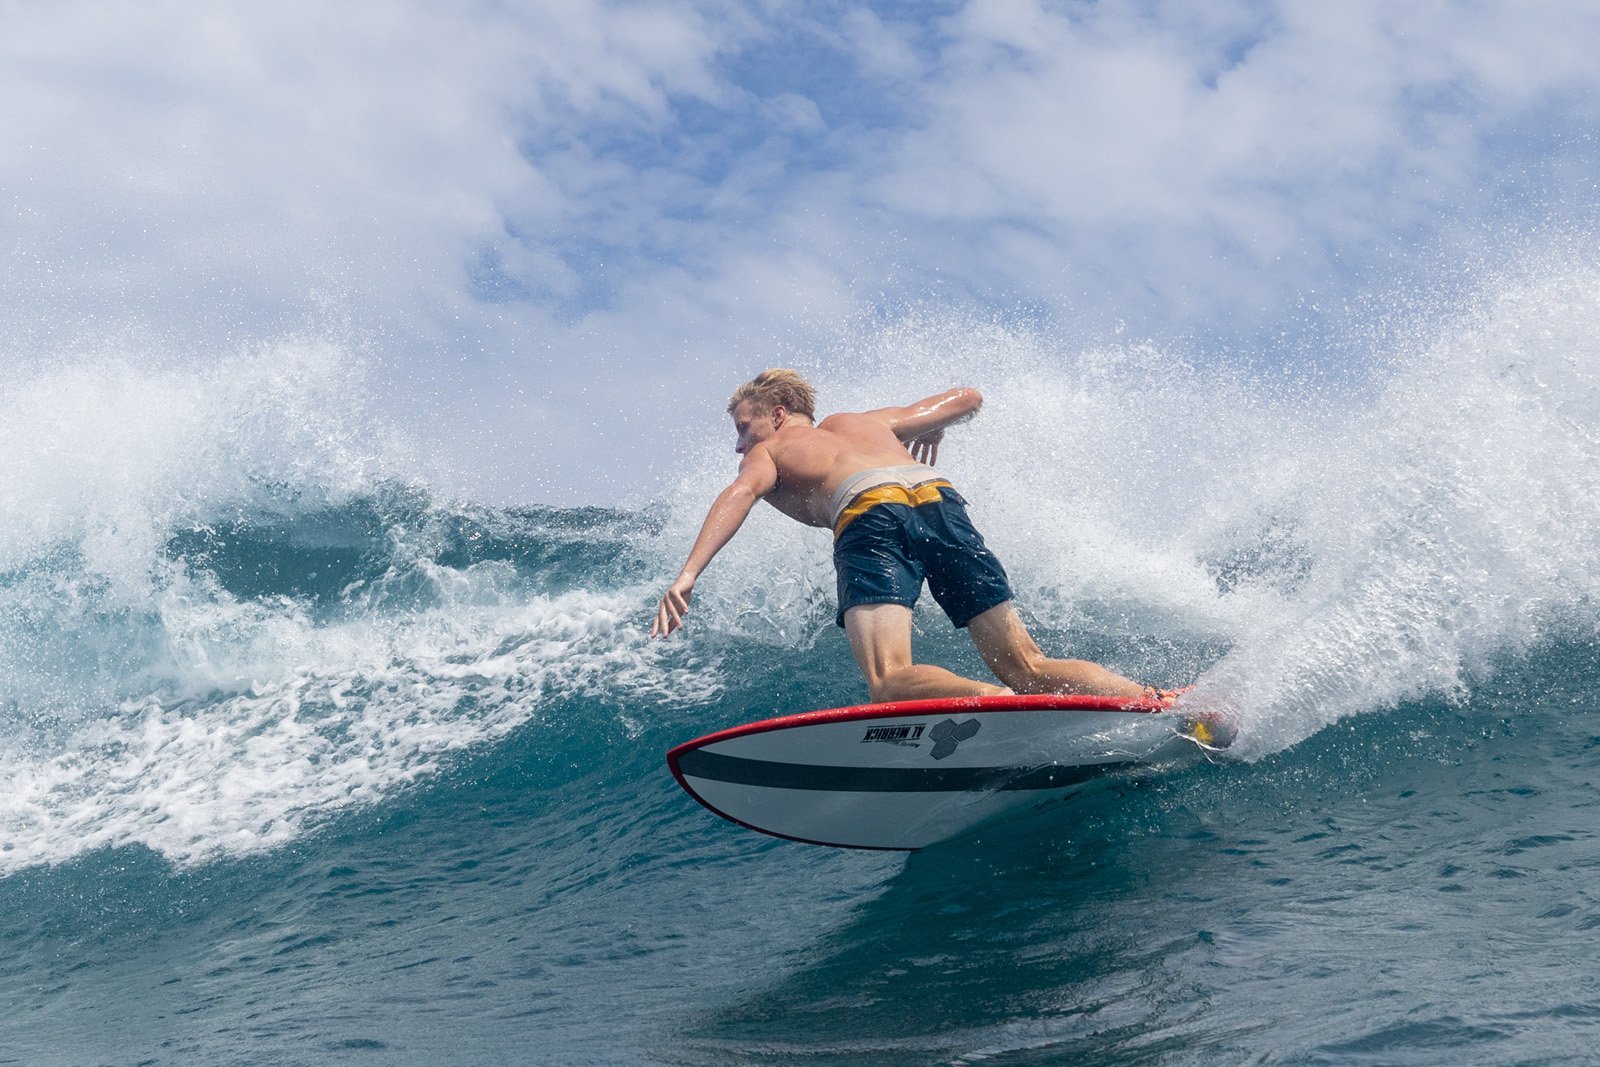 Pod Mod Surfboard surfs a crumbling wave